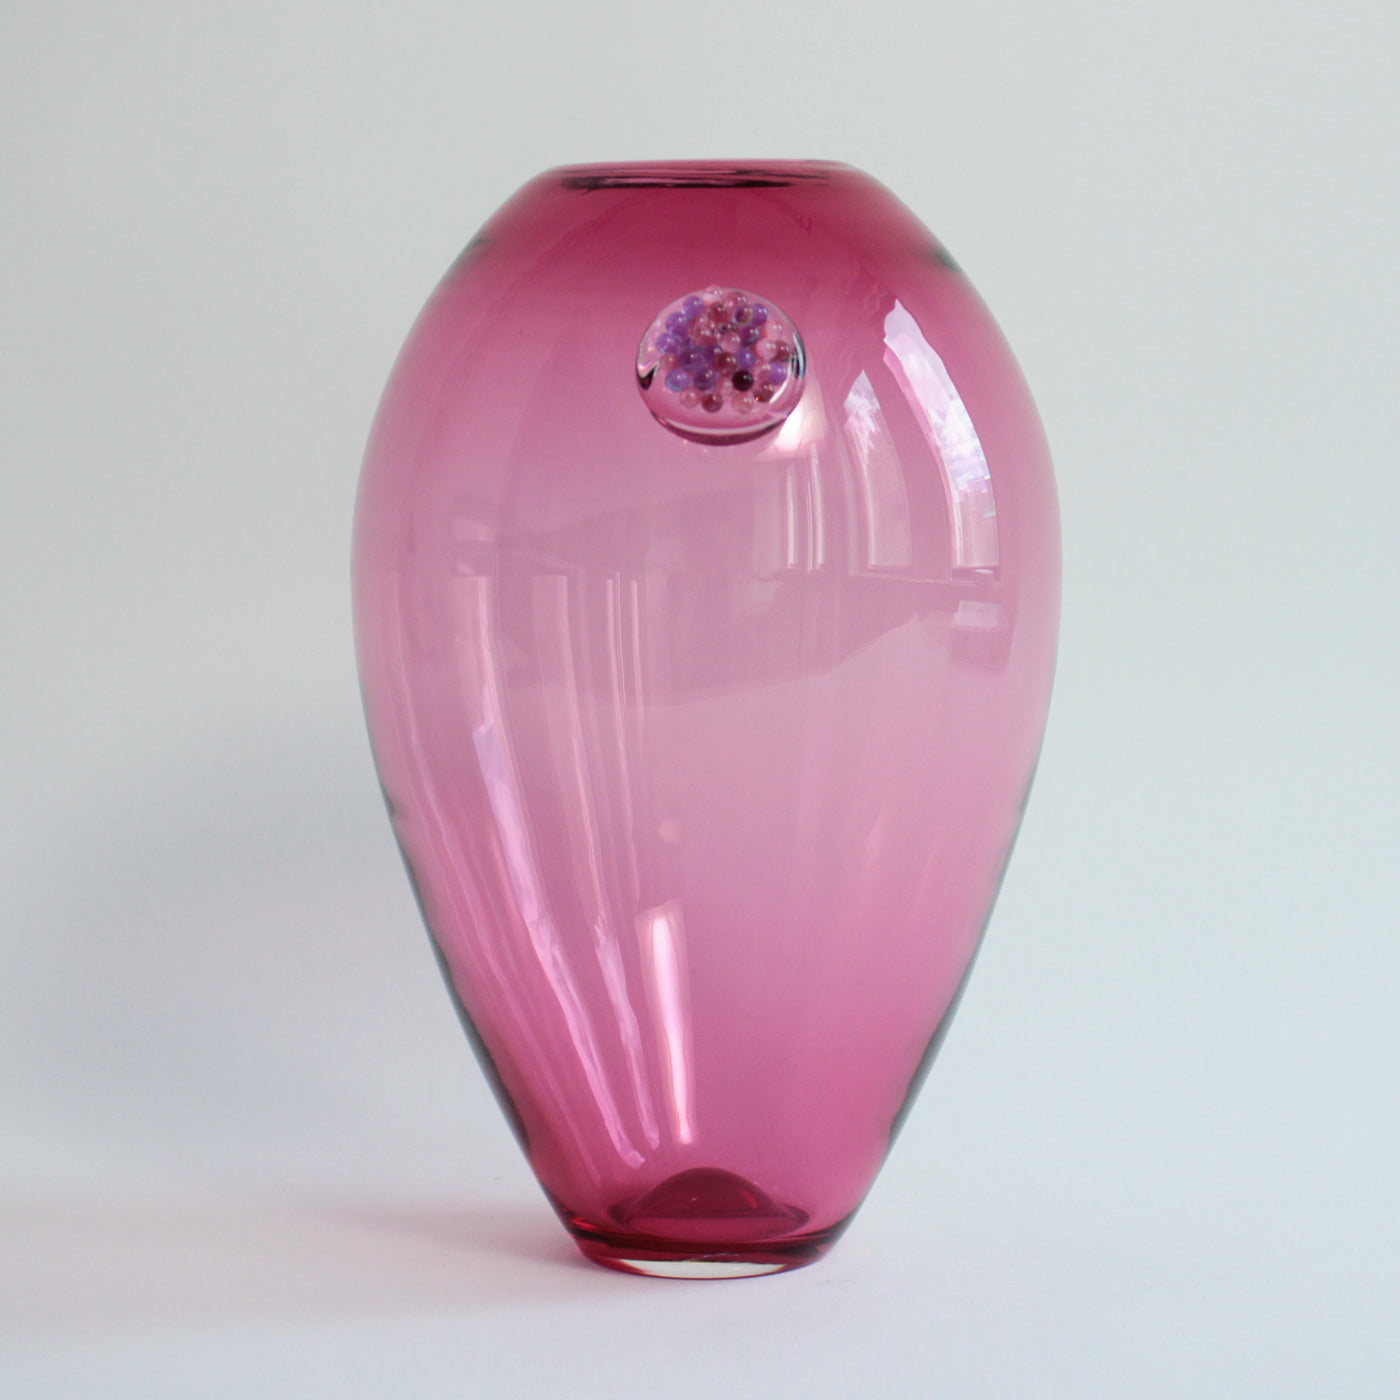 Vase grenade rose avec pépins violet